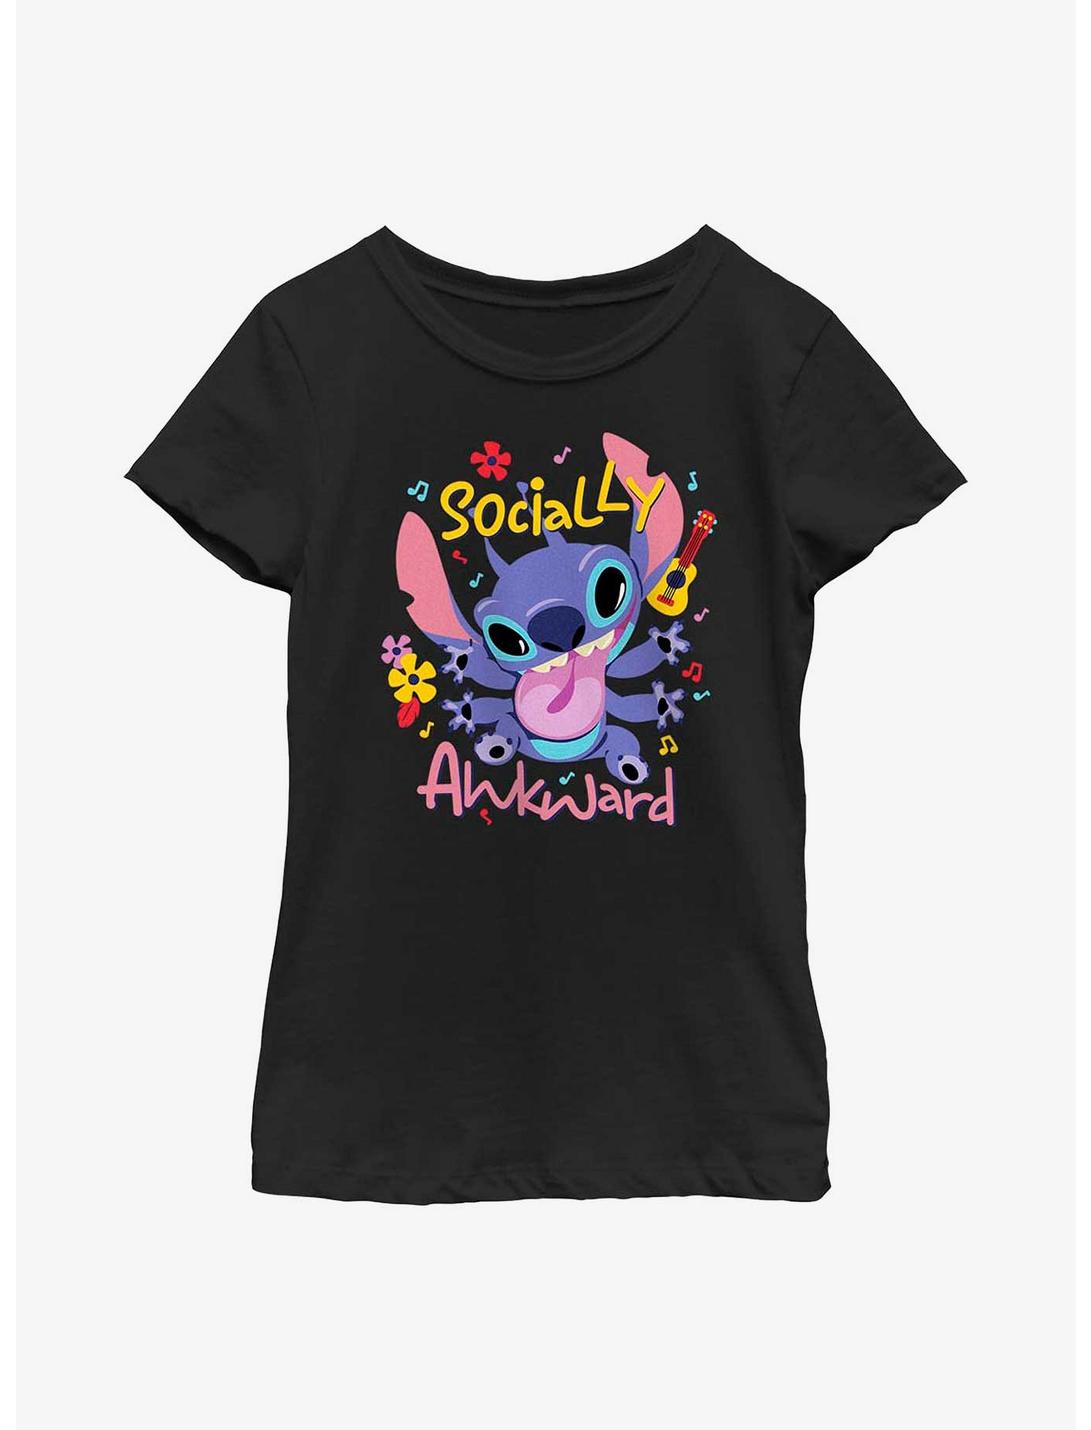 Disney Lilo & Stitch Socially Awkward Youth Girls T-Shirt, BLACK, hi-res